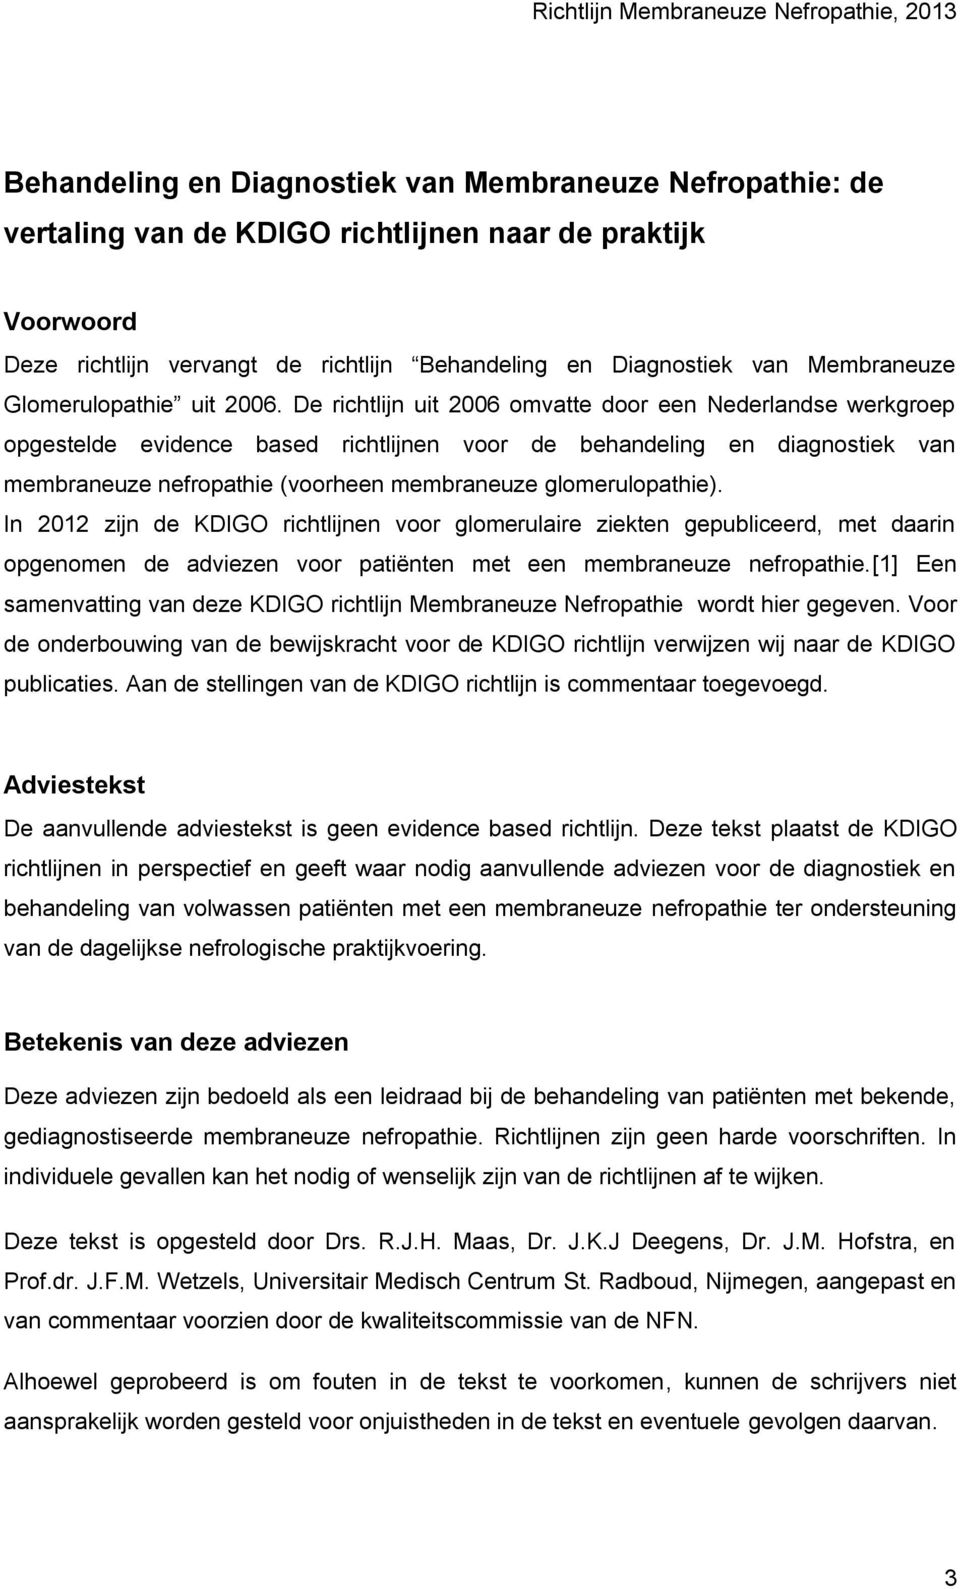 De richtlijn uit 2006 omvatte door een Nederlandse werkgroep opgestelde evidence based richtlijnen voor de behandeling en diagnostiek van membraneuze nefropathie (voorheen membraneuze